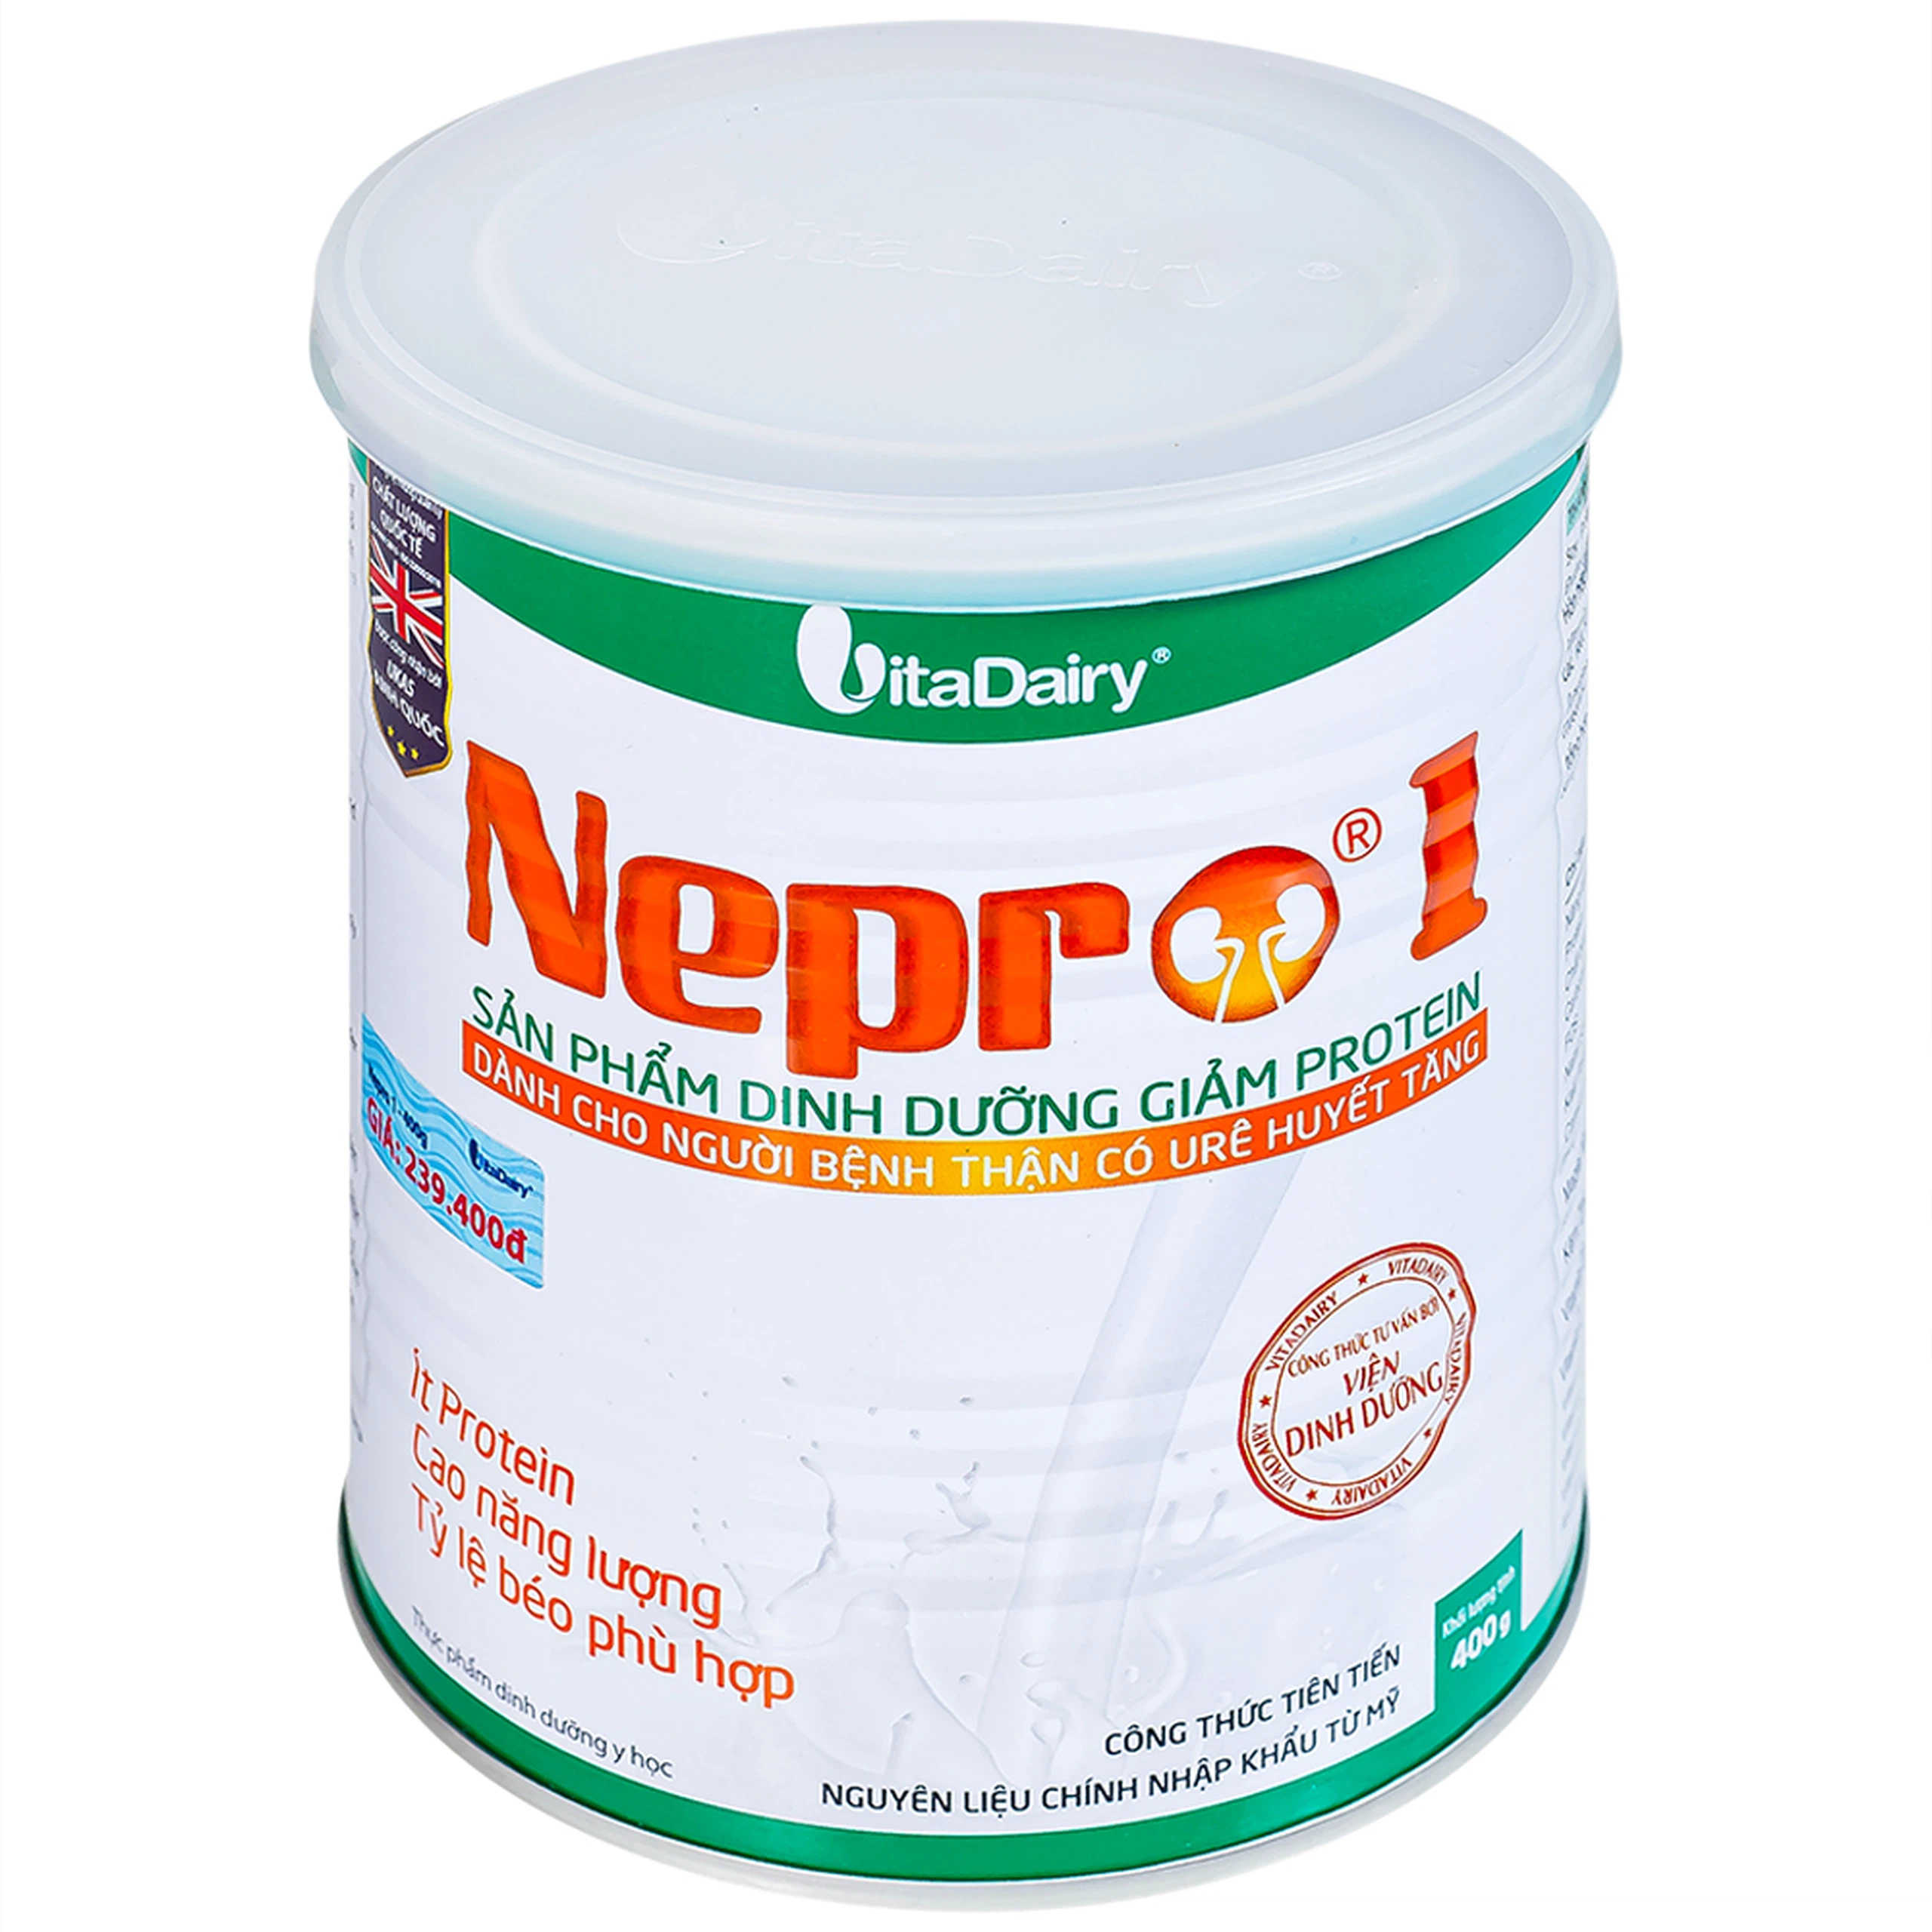 Sữa bột Nepro 1 VitaDairy bổ sung dinh dưỡng giảm protein dành cho người bệnh thận (400g)